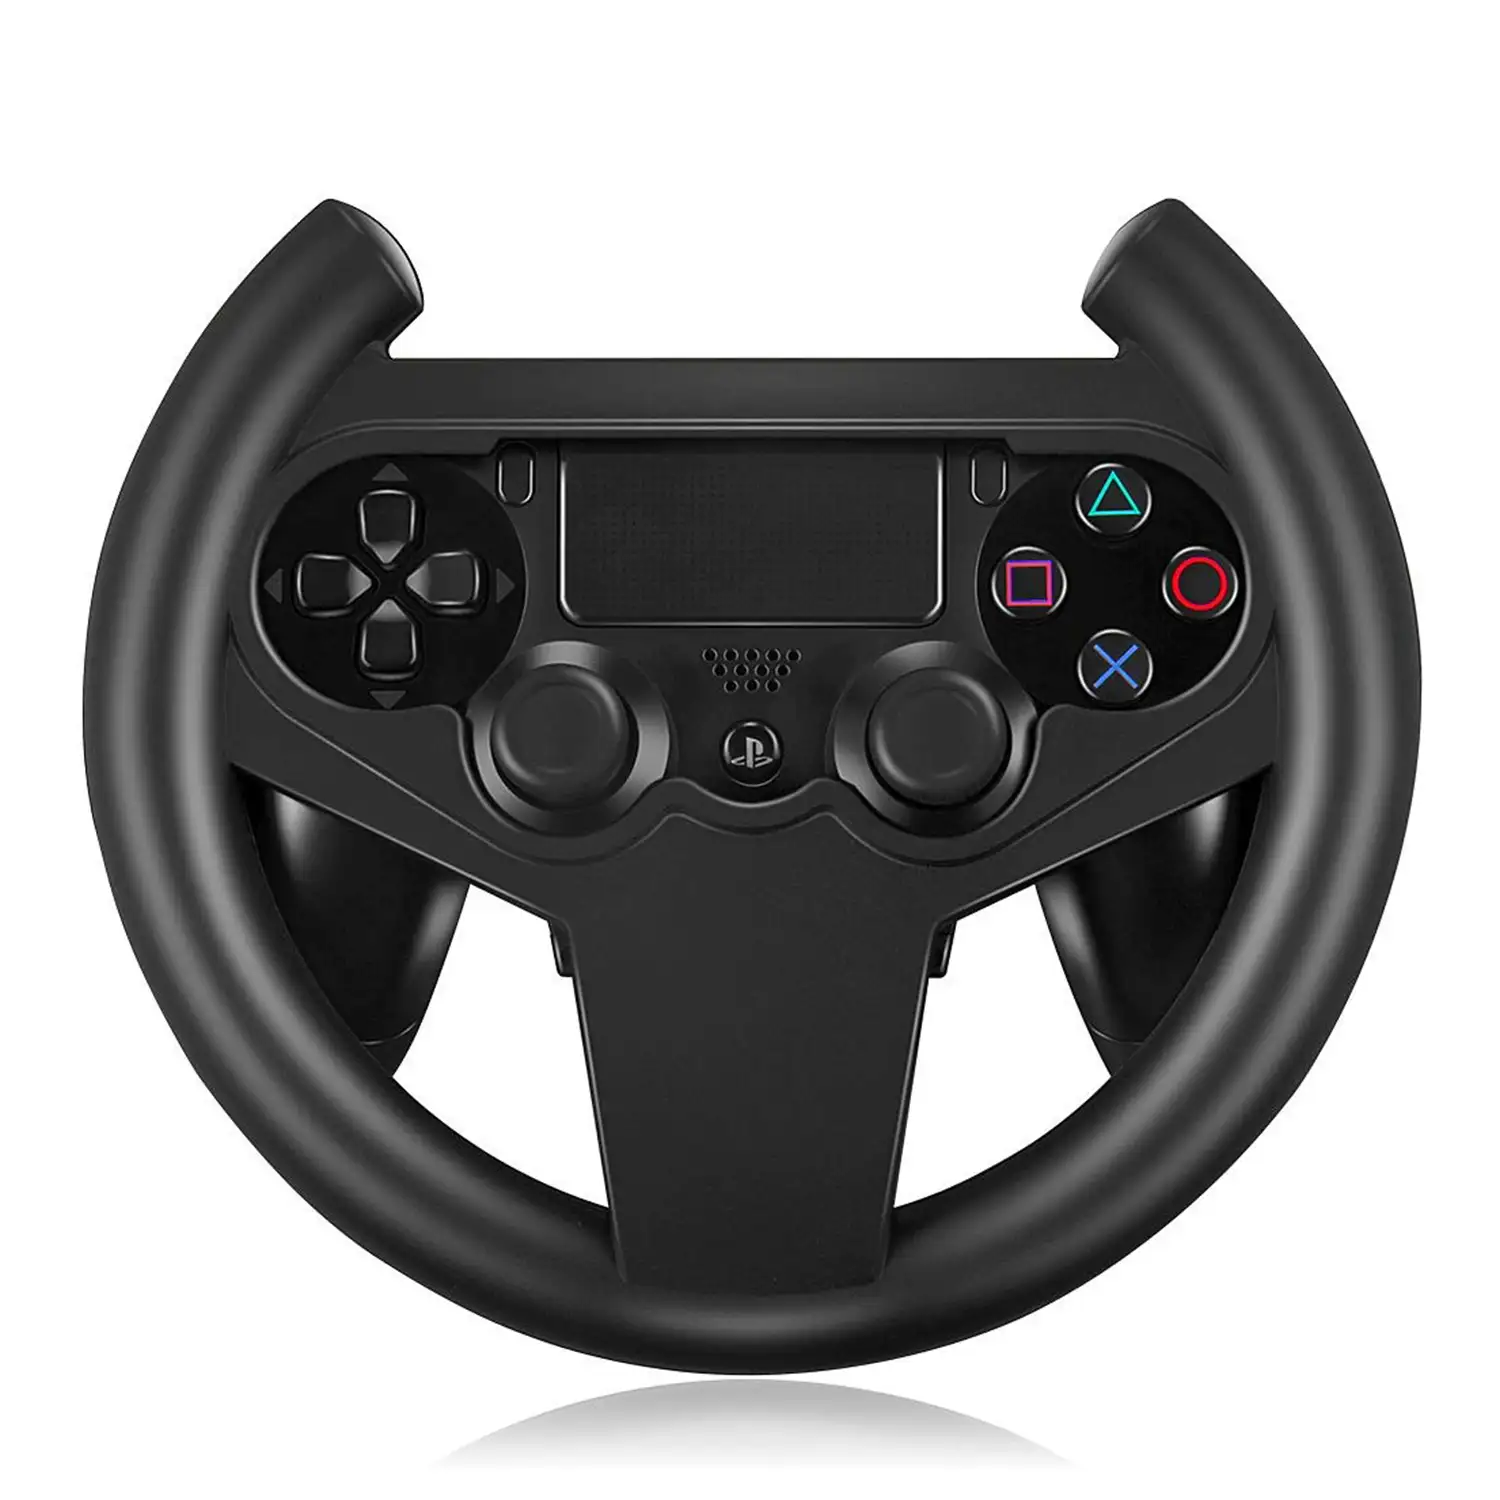 Volante para mando de PS4. Ajuste perfecto. Juegos racing, simulación, coches.